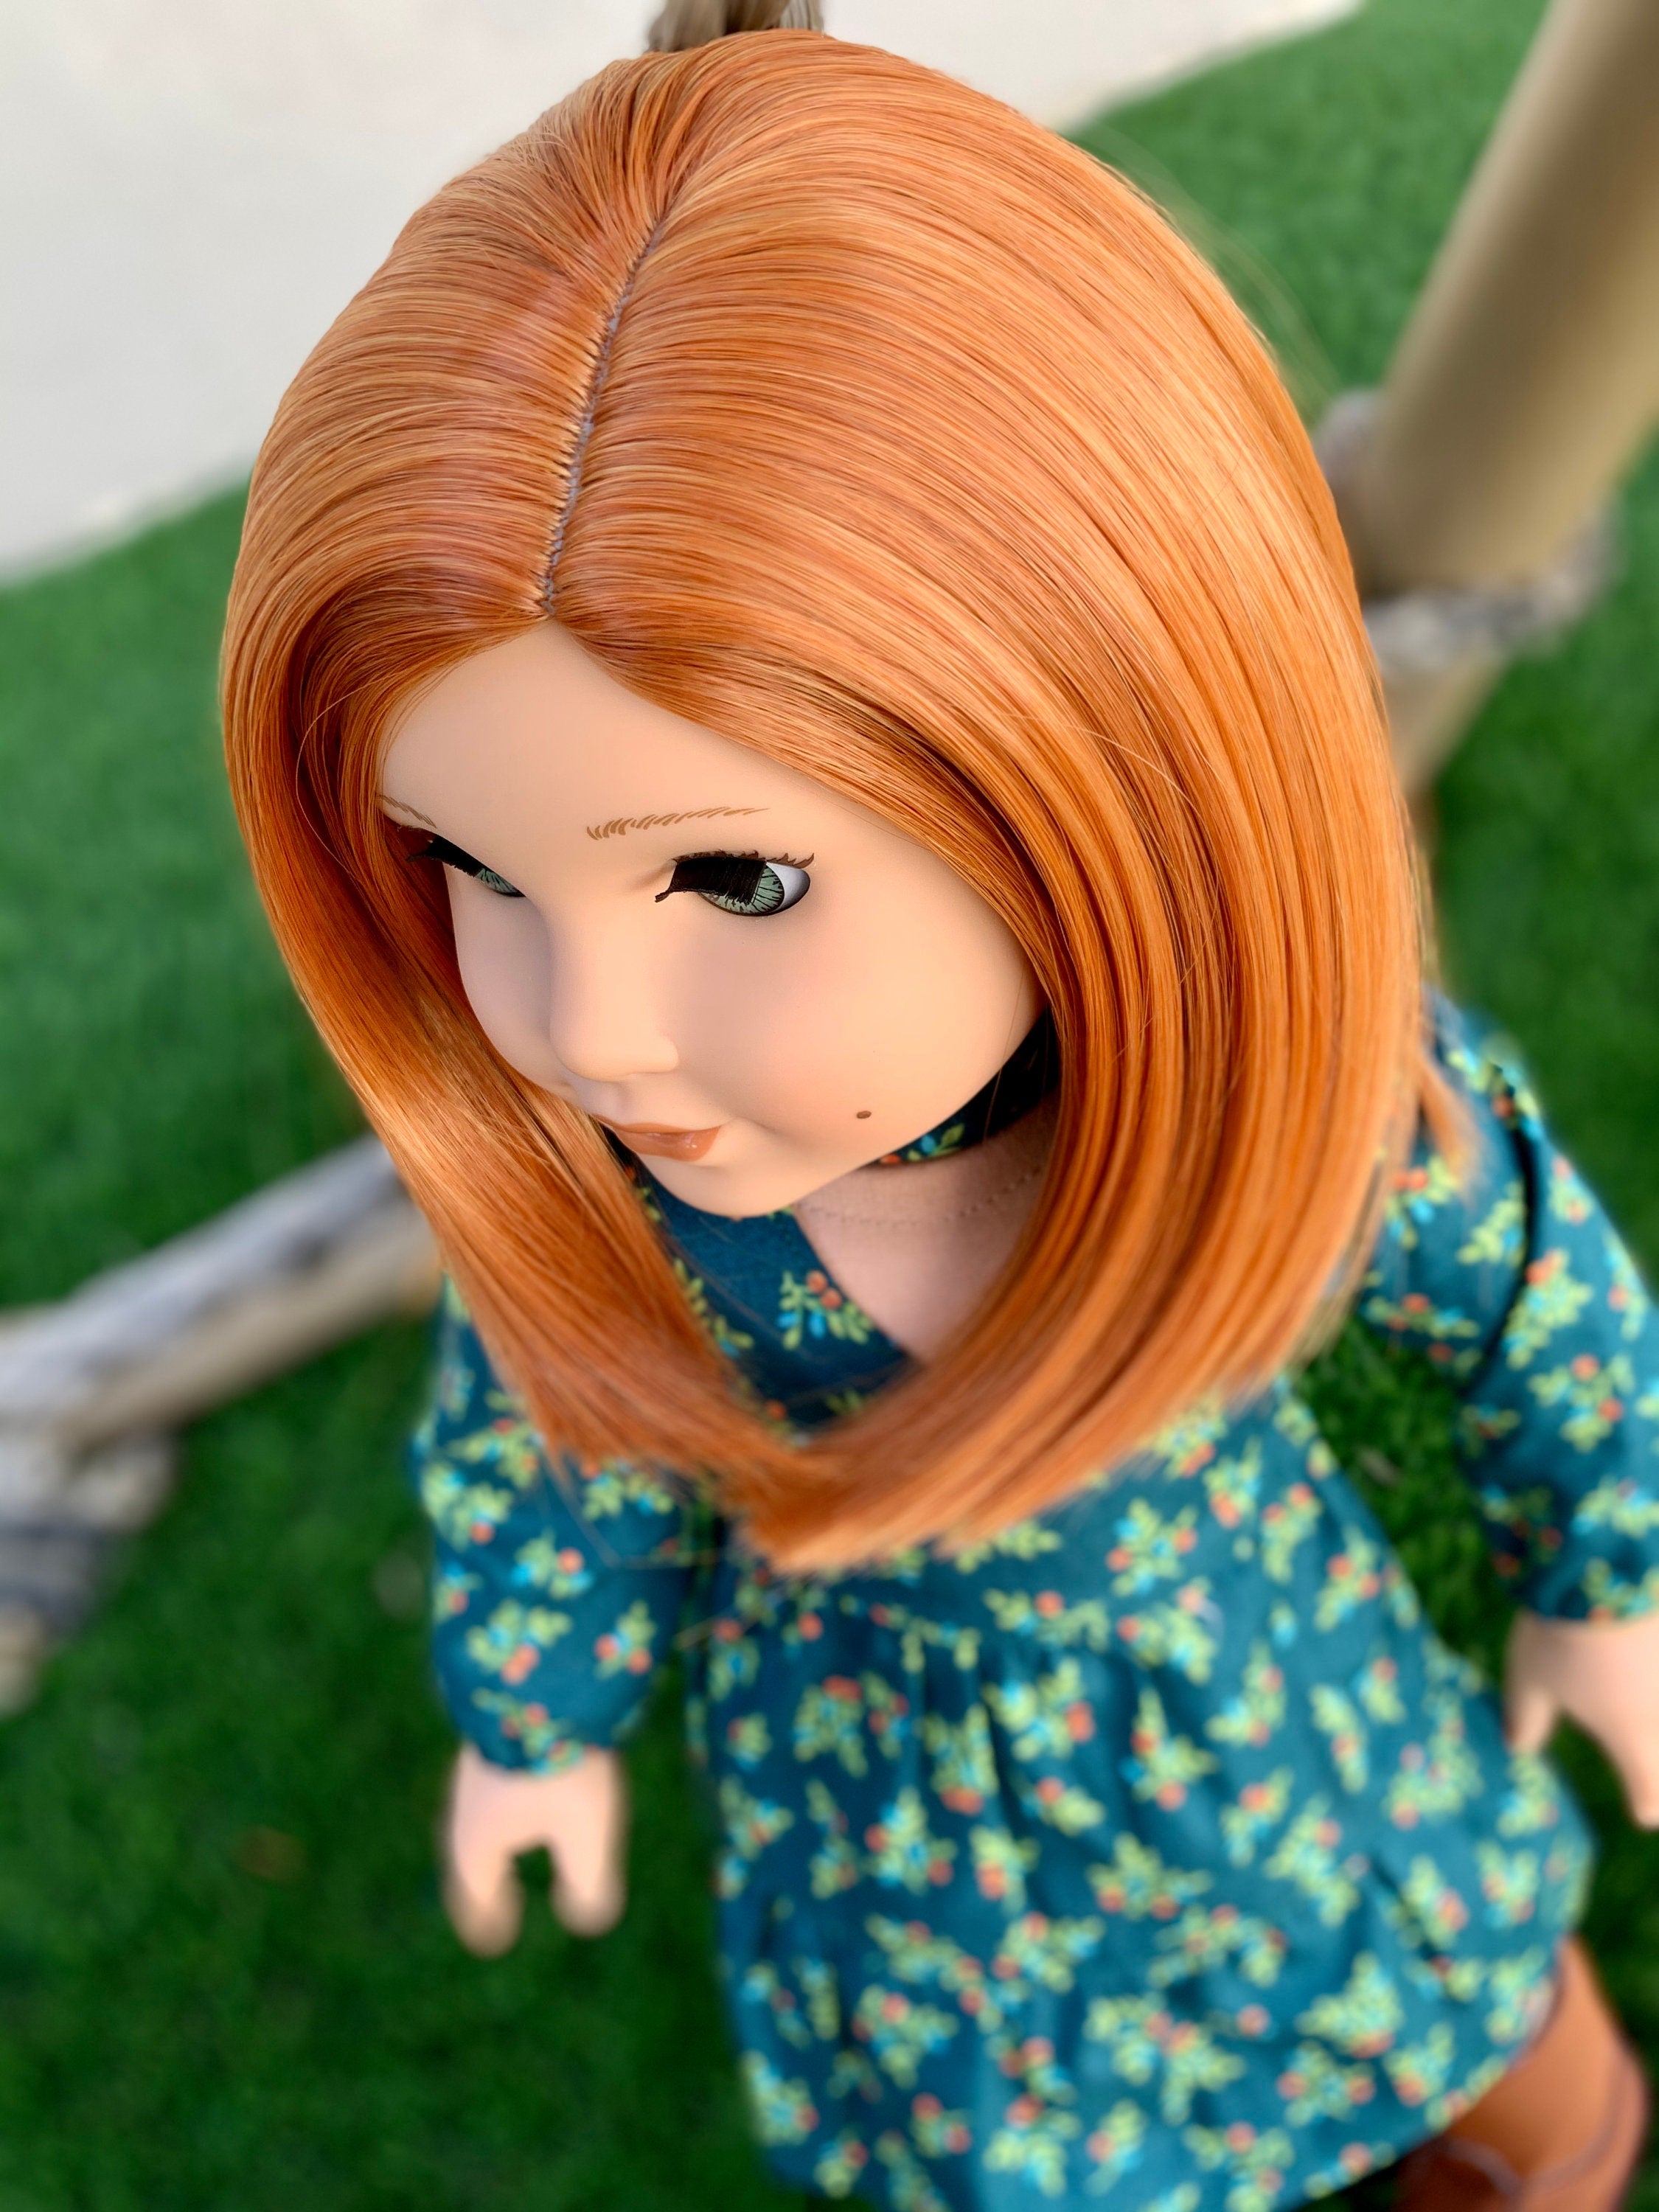 Custom doll wig for 18" American Girl Dolls - Heat Safe - Tangle Resistant - fits 10-11" head size of 18" dolls OG Blythe BJD Gotz Red bob